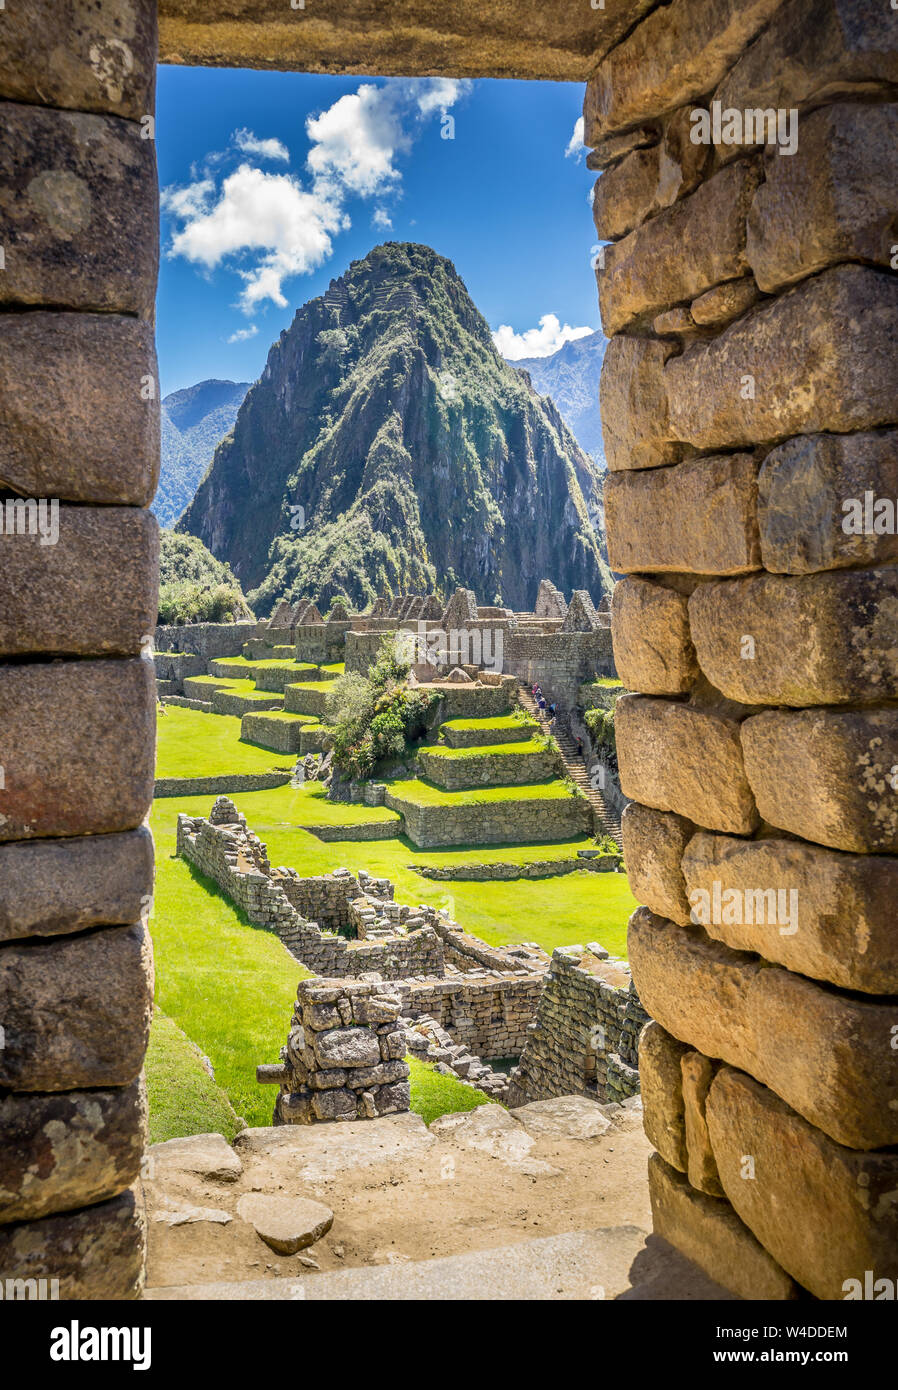 Les ruines Incas de Machu Picchu, Site du patrimoine mondial de l'Unesco dans le cadre du mur de pierre Banque D'Images